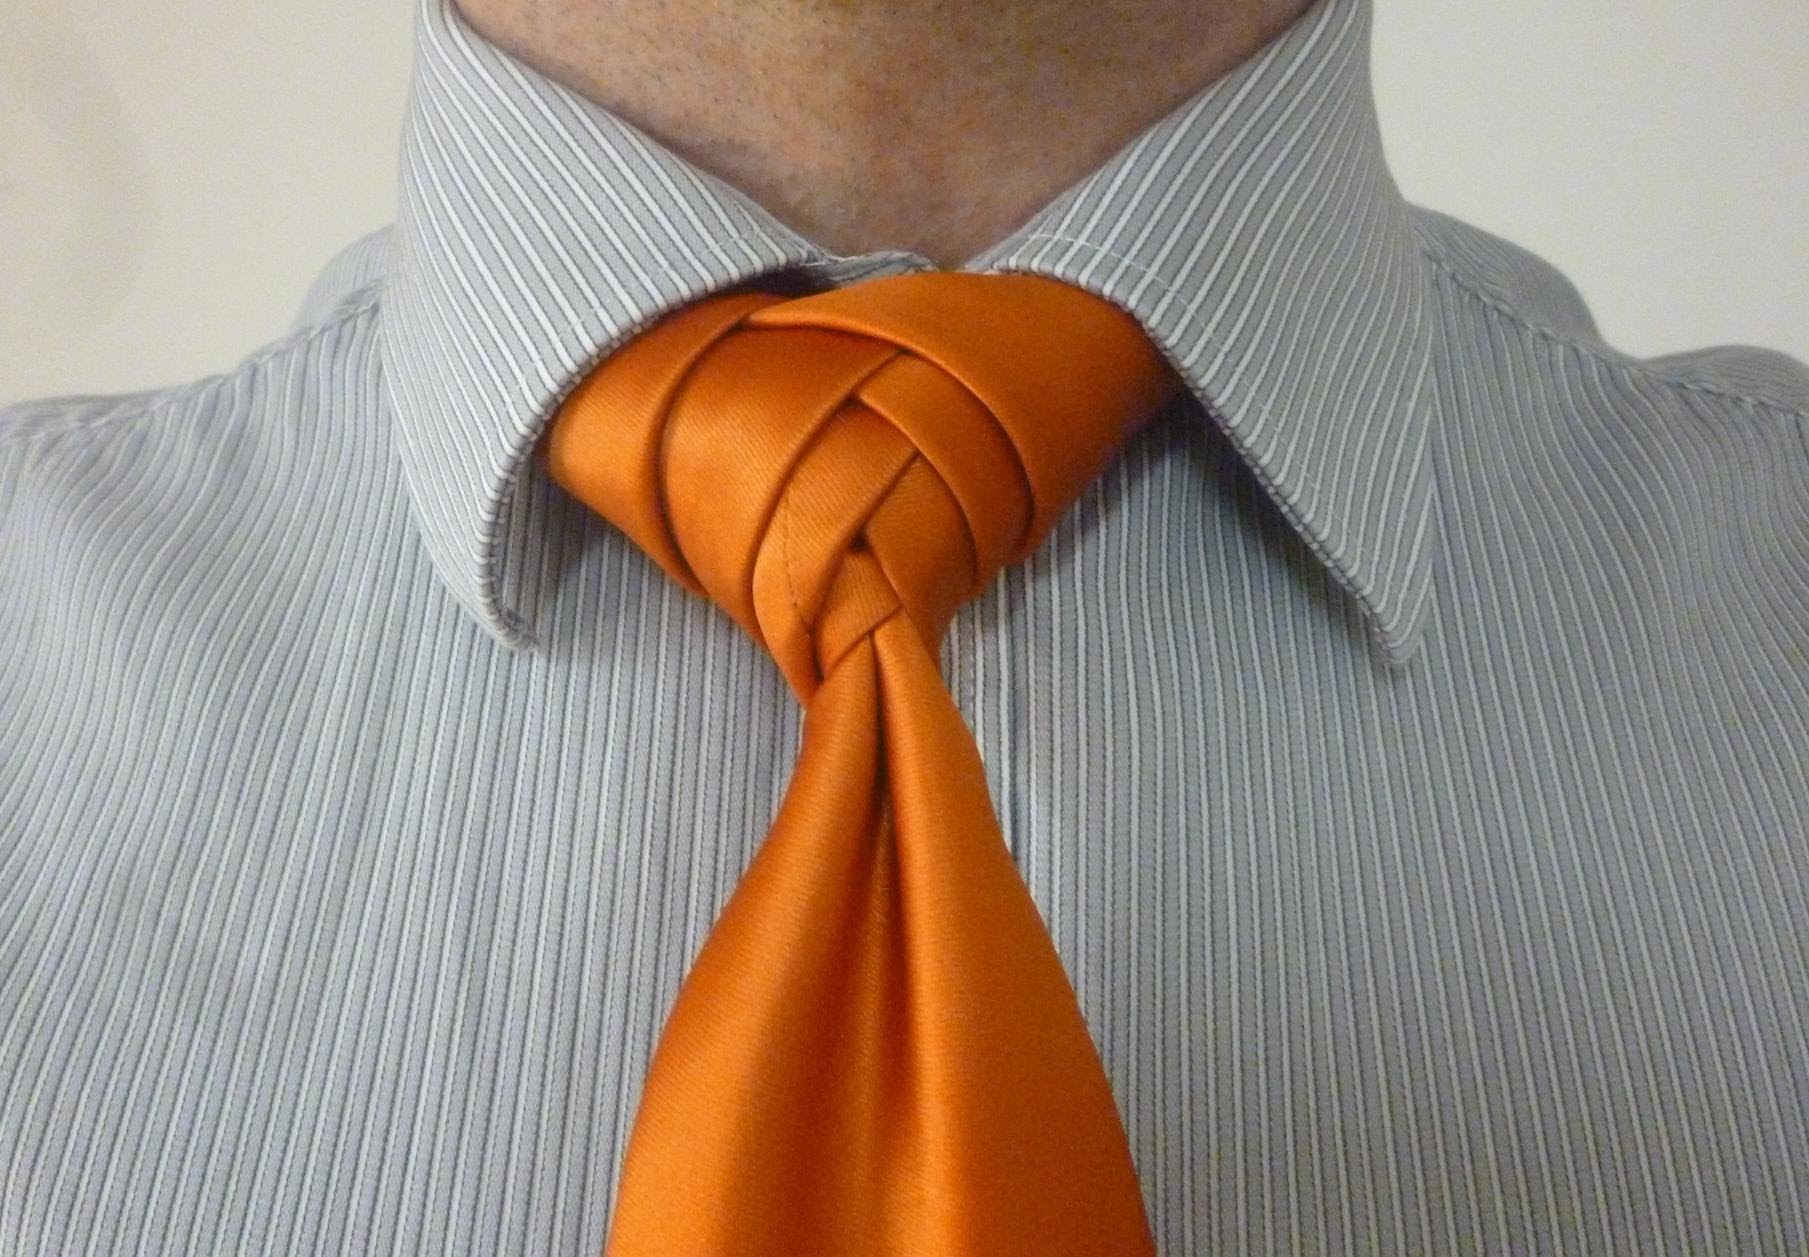 картинки международный день галстука